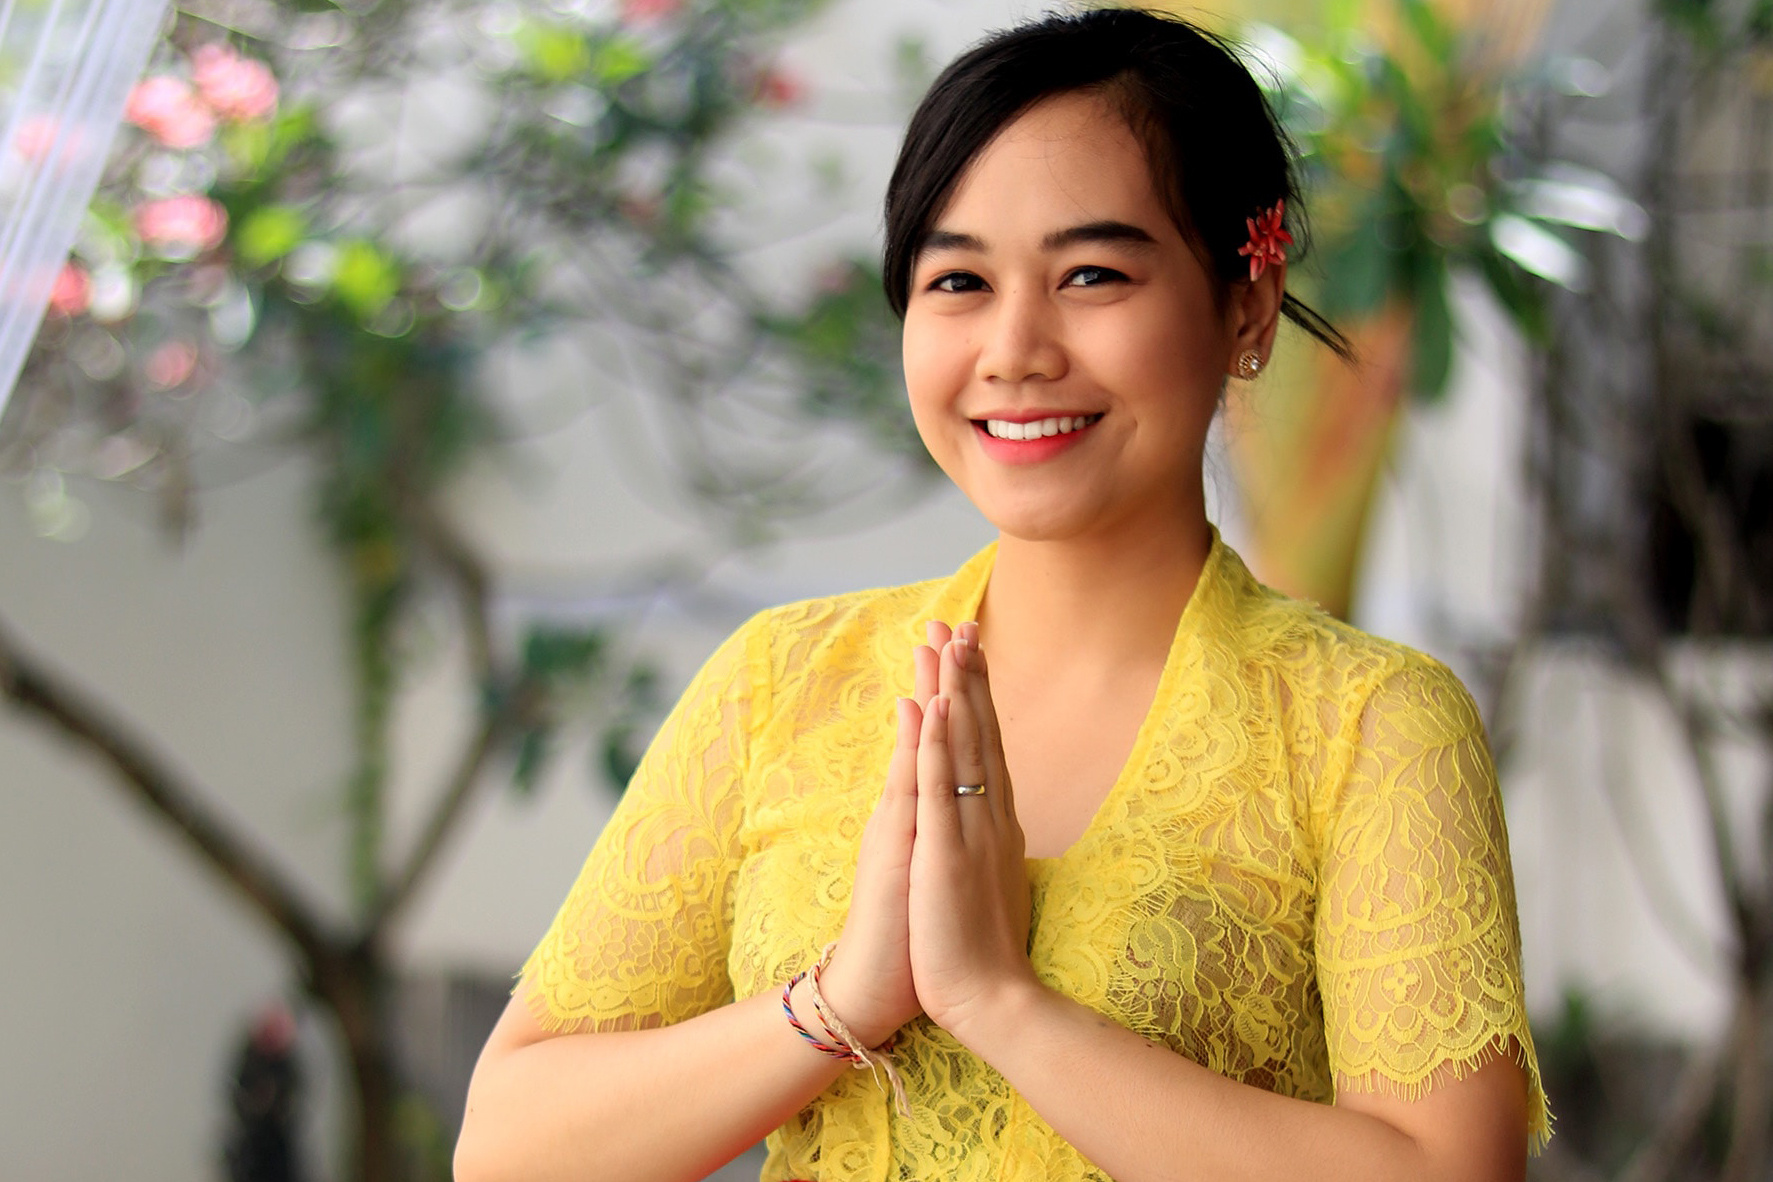 Белоснежная улыбка жителей Индонезии — заслуга натуральных ингредиентов